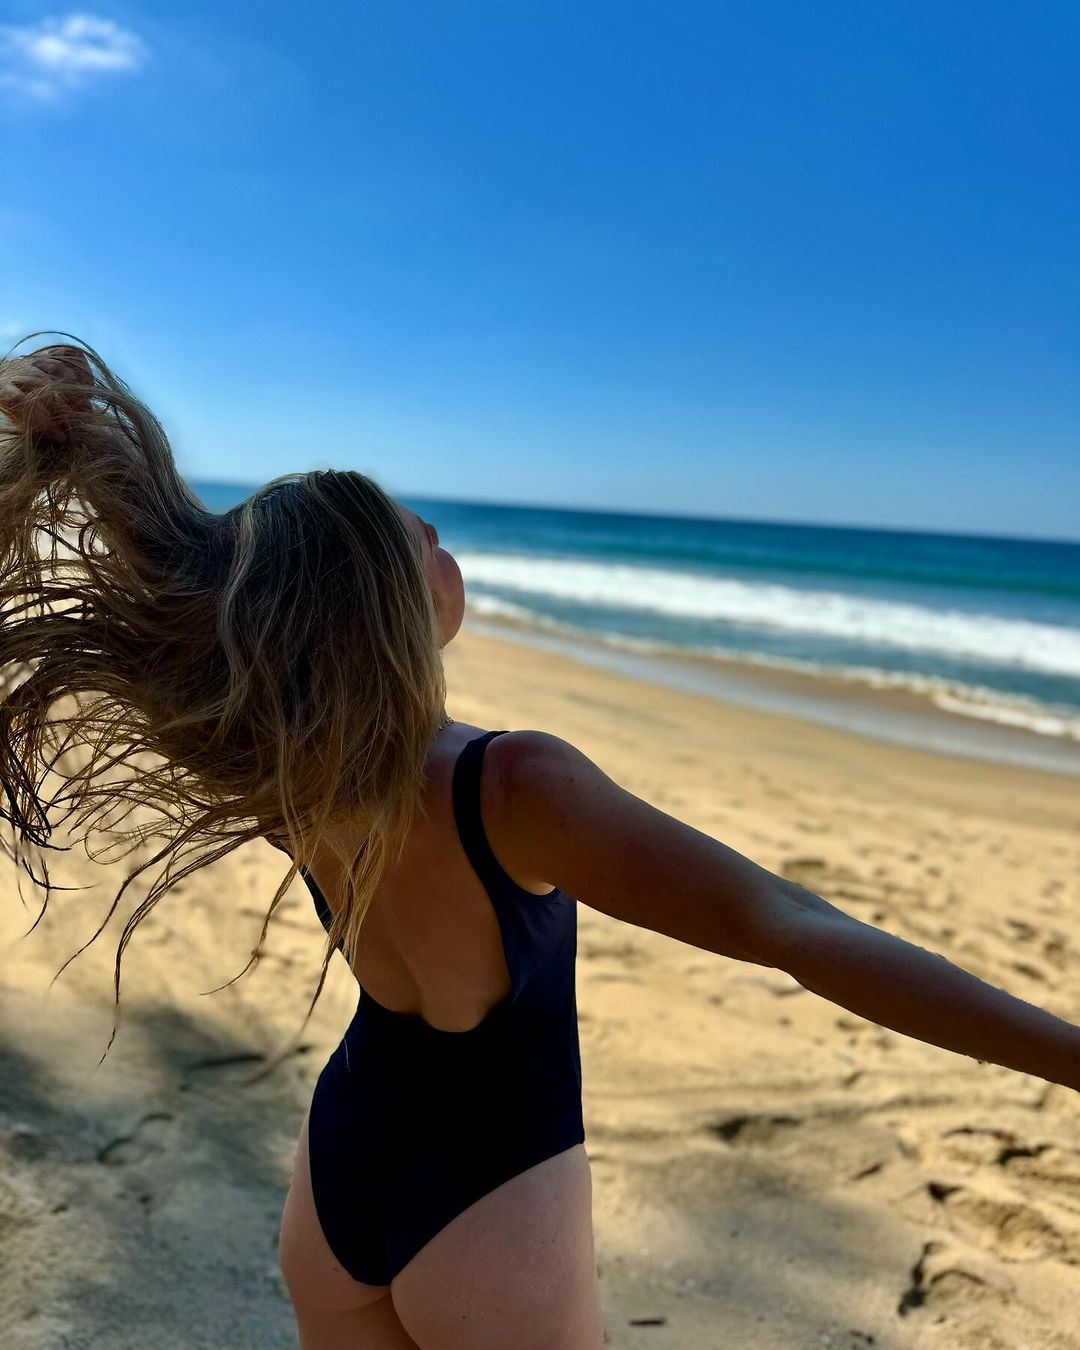 A Influenciadora aproveitando a praia em viagem ao México Instagram/@annemariehagerty